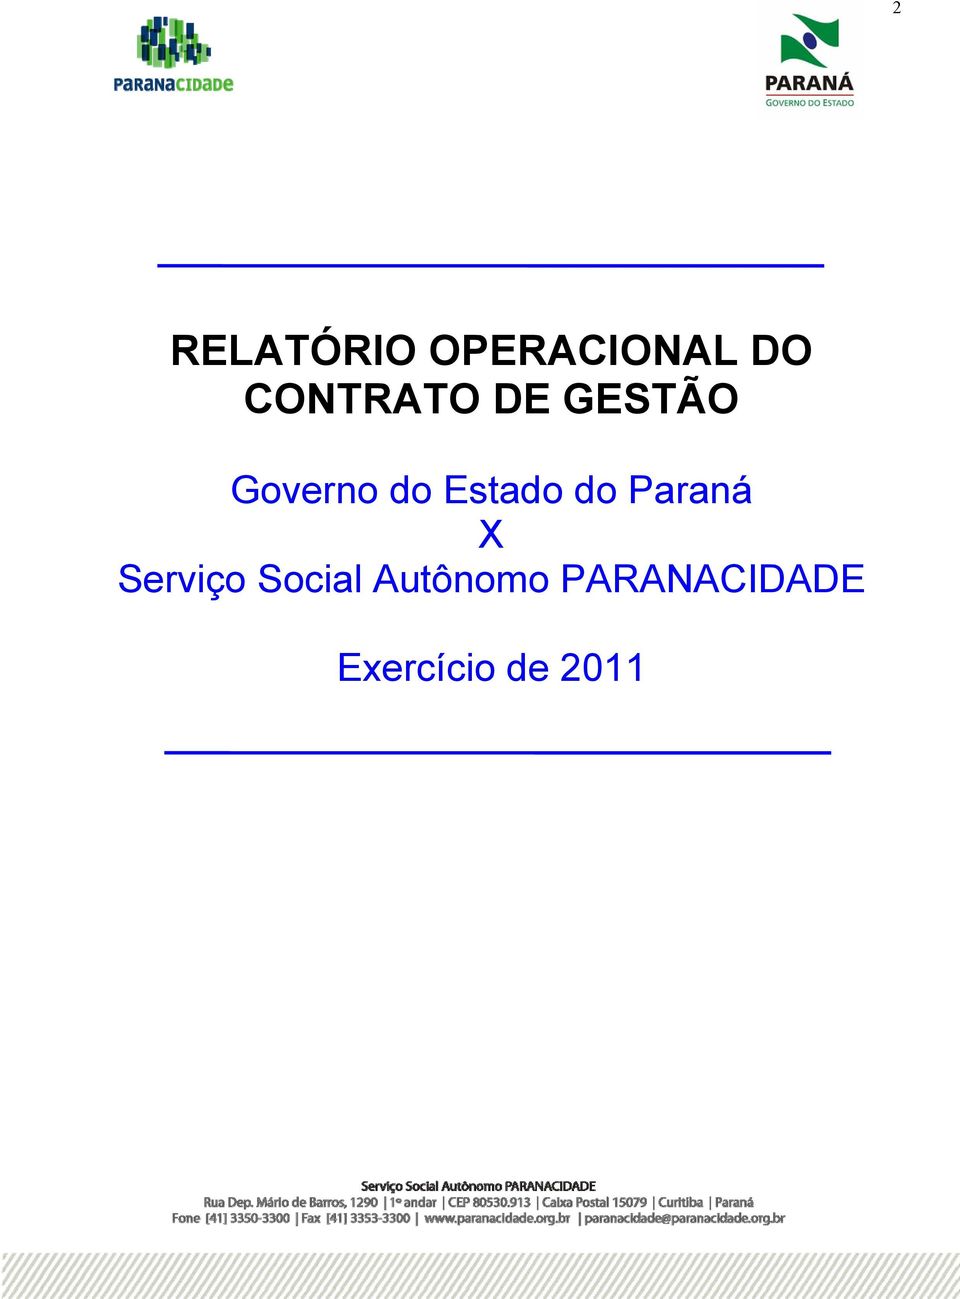 Estado do Paraná Serviço Social